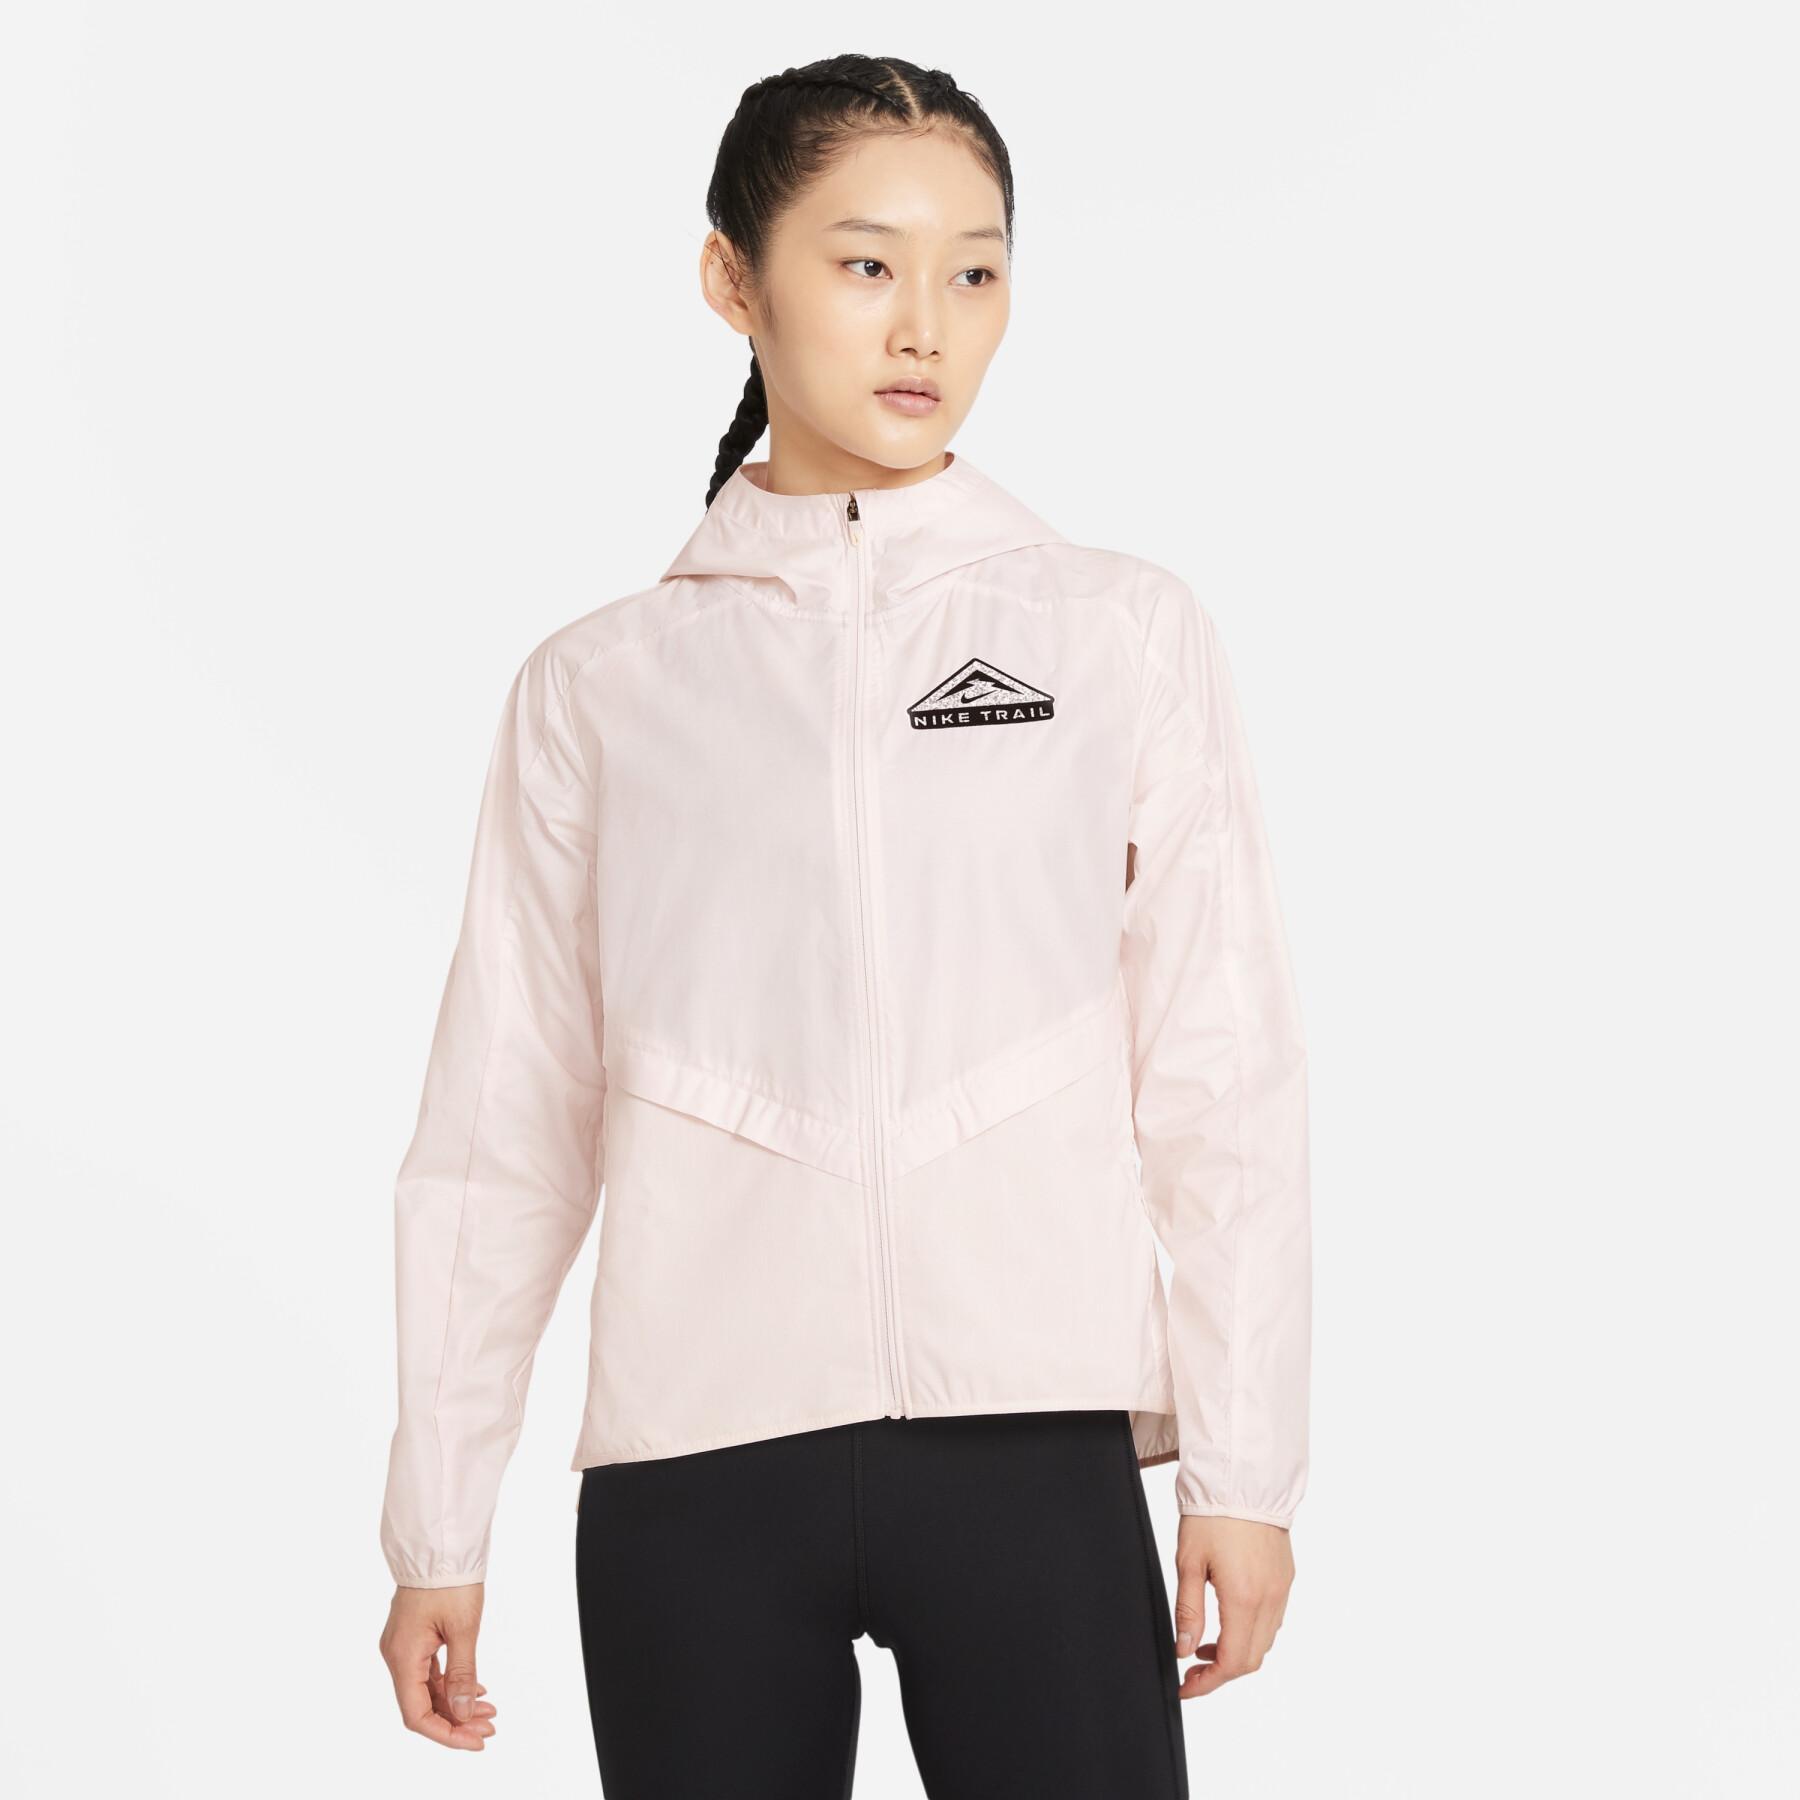 Women's sweat jacket Nike shield